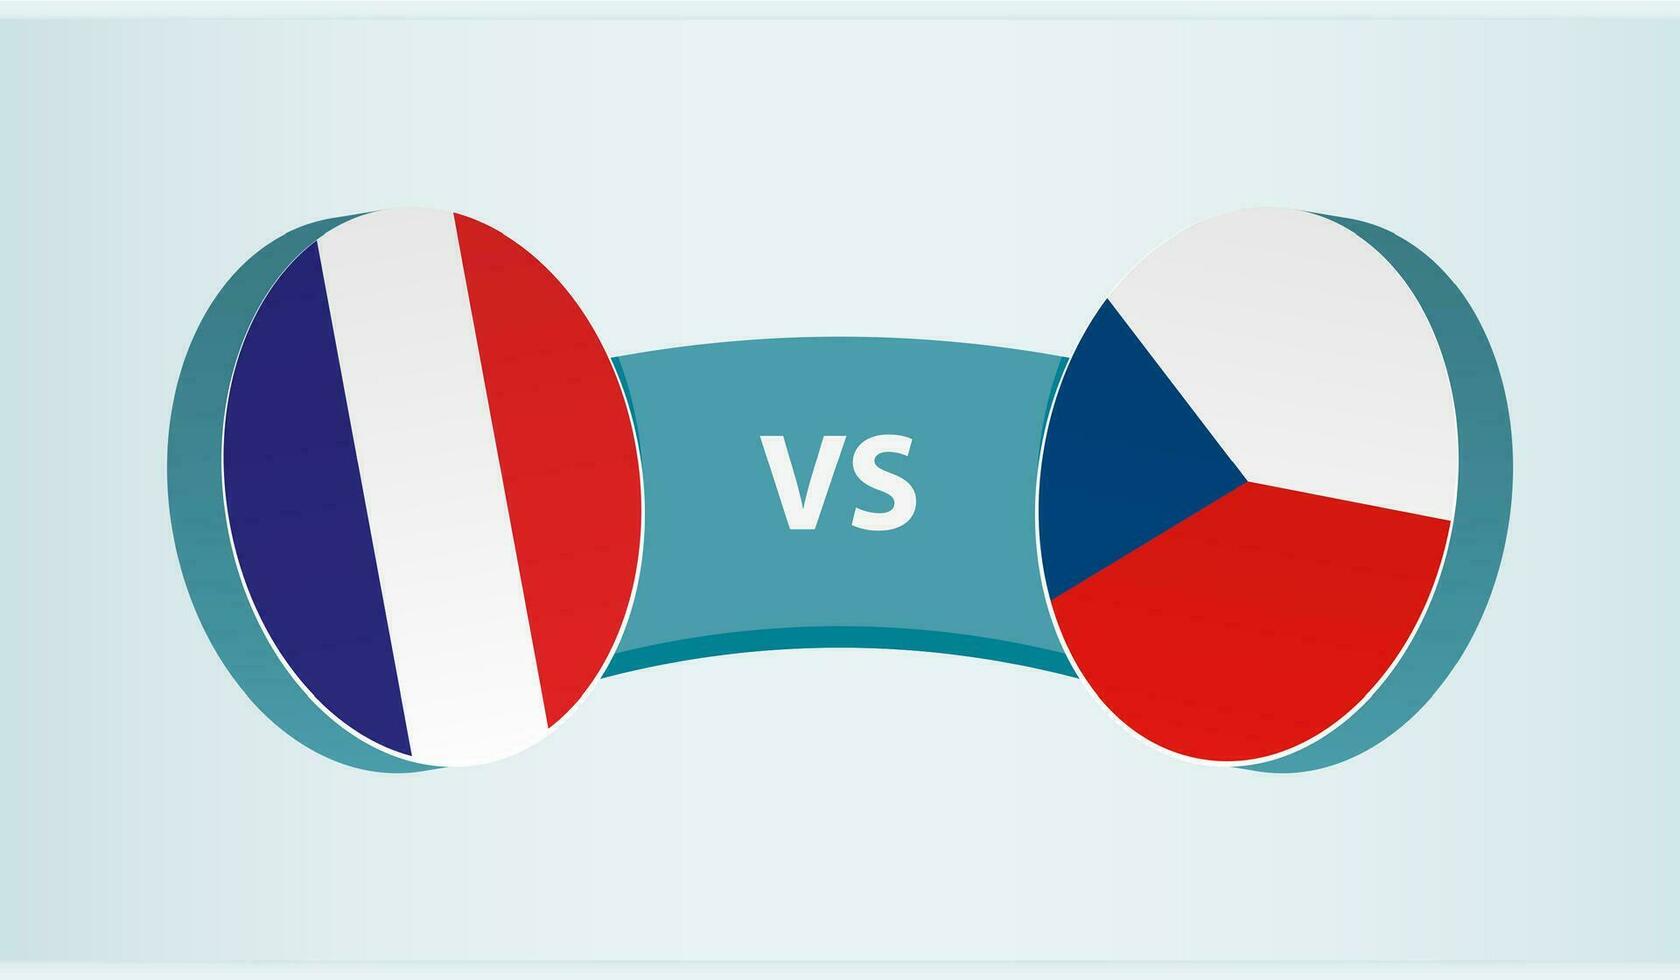 França versus tcheco república, equipe Esportes concorrência conceito. vetor